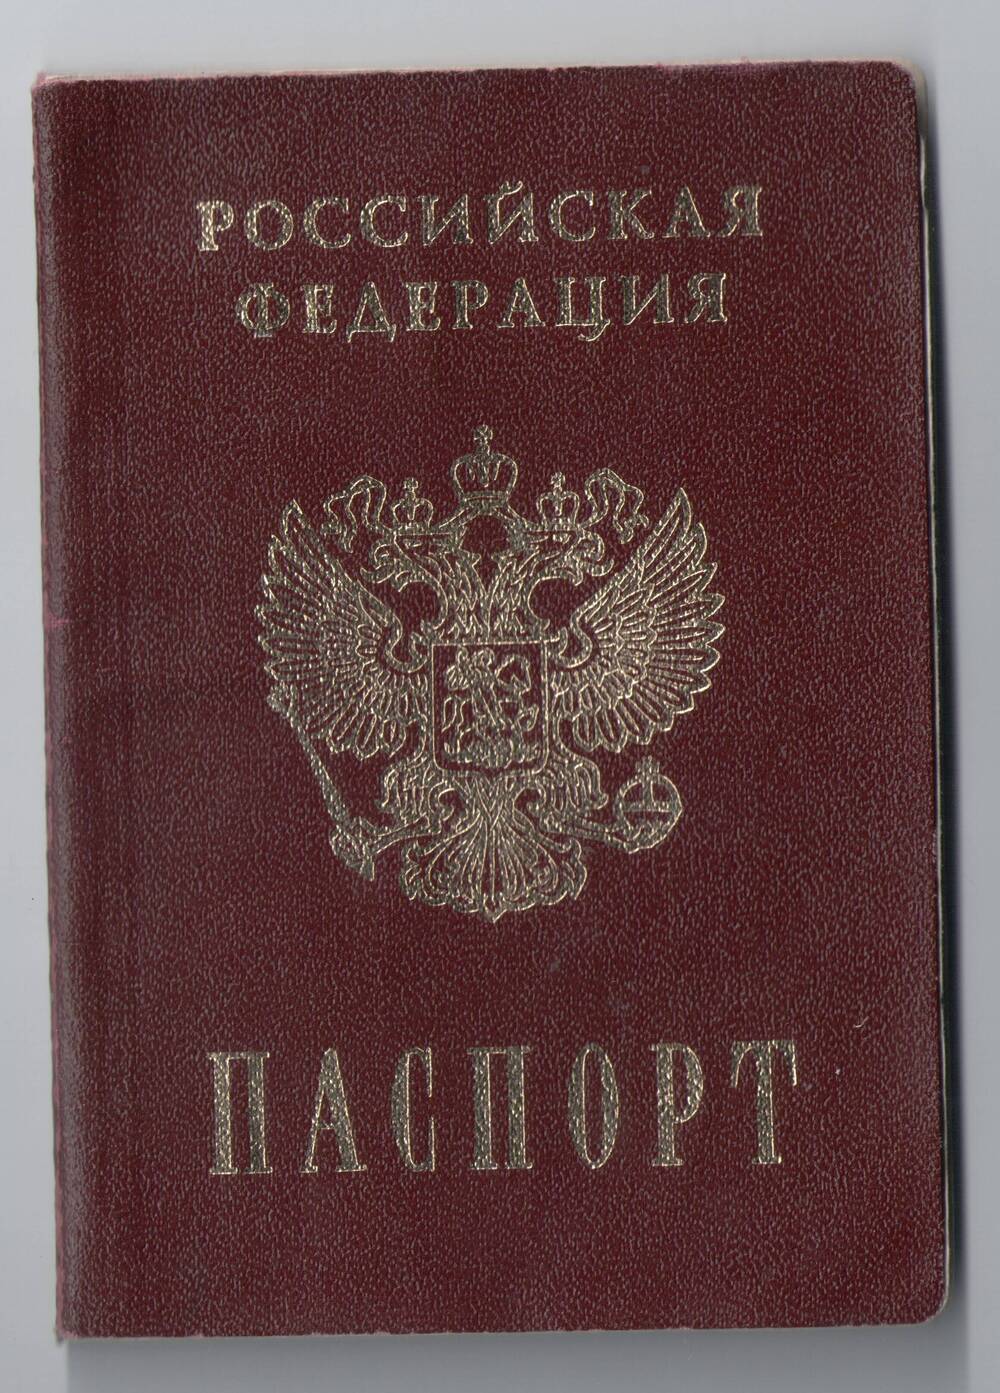 Паспорт РФ
Казакова Виктора Михайловича